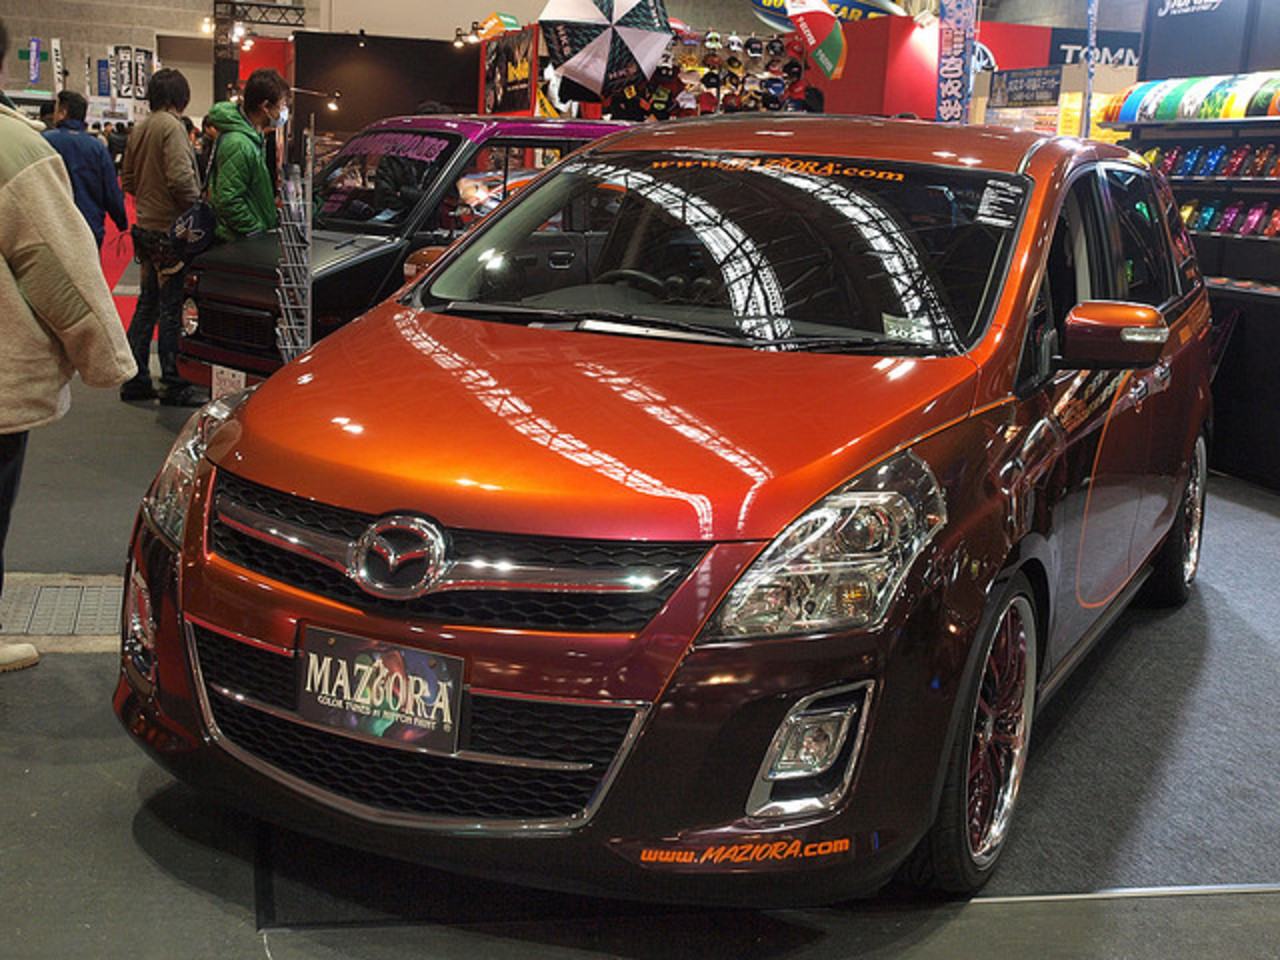 Mazda MPV | Flickr - Photo Sharing!